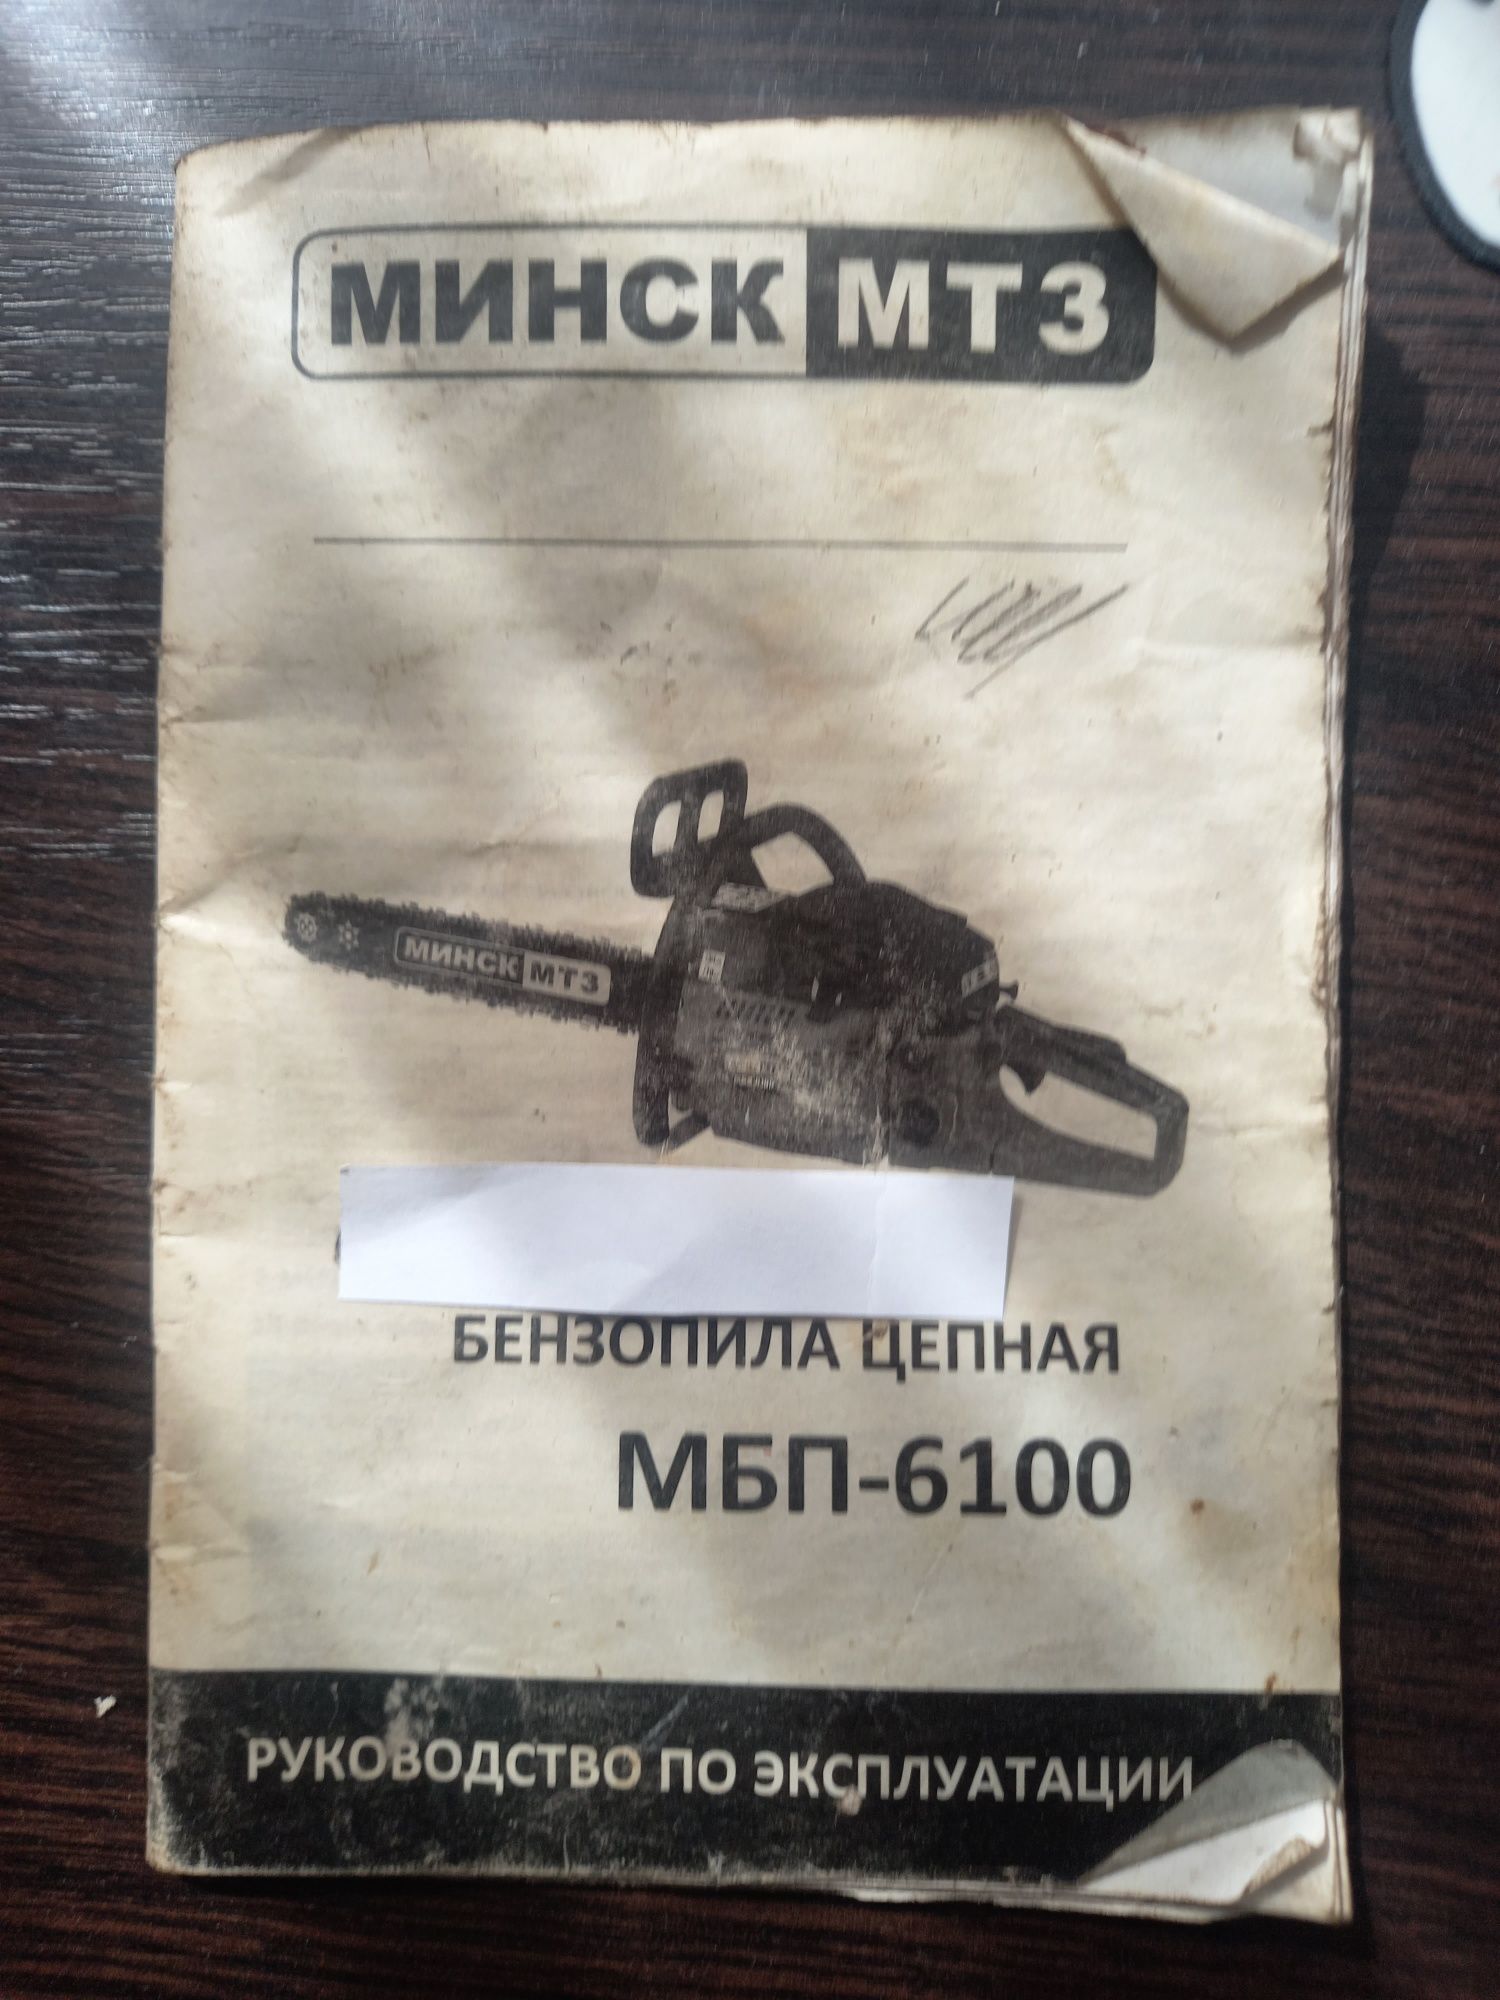 Продам пилку минск МТ3 МБП-6100